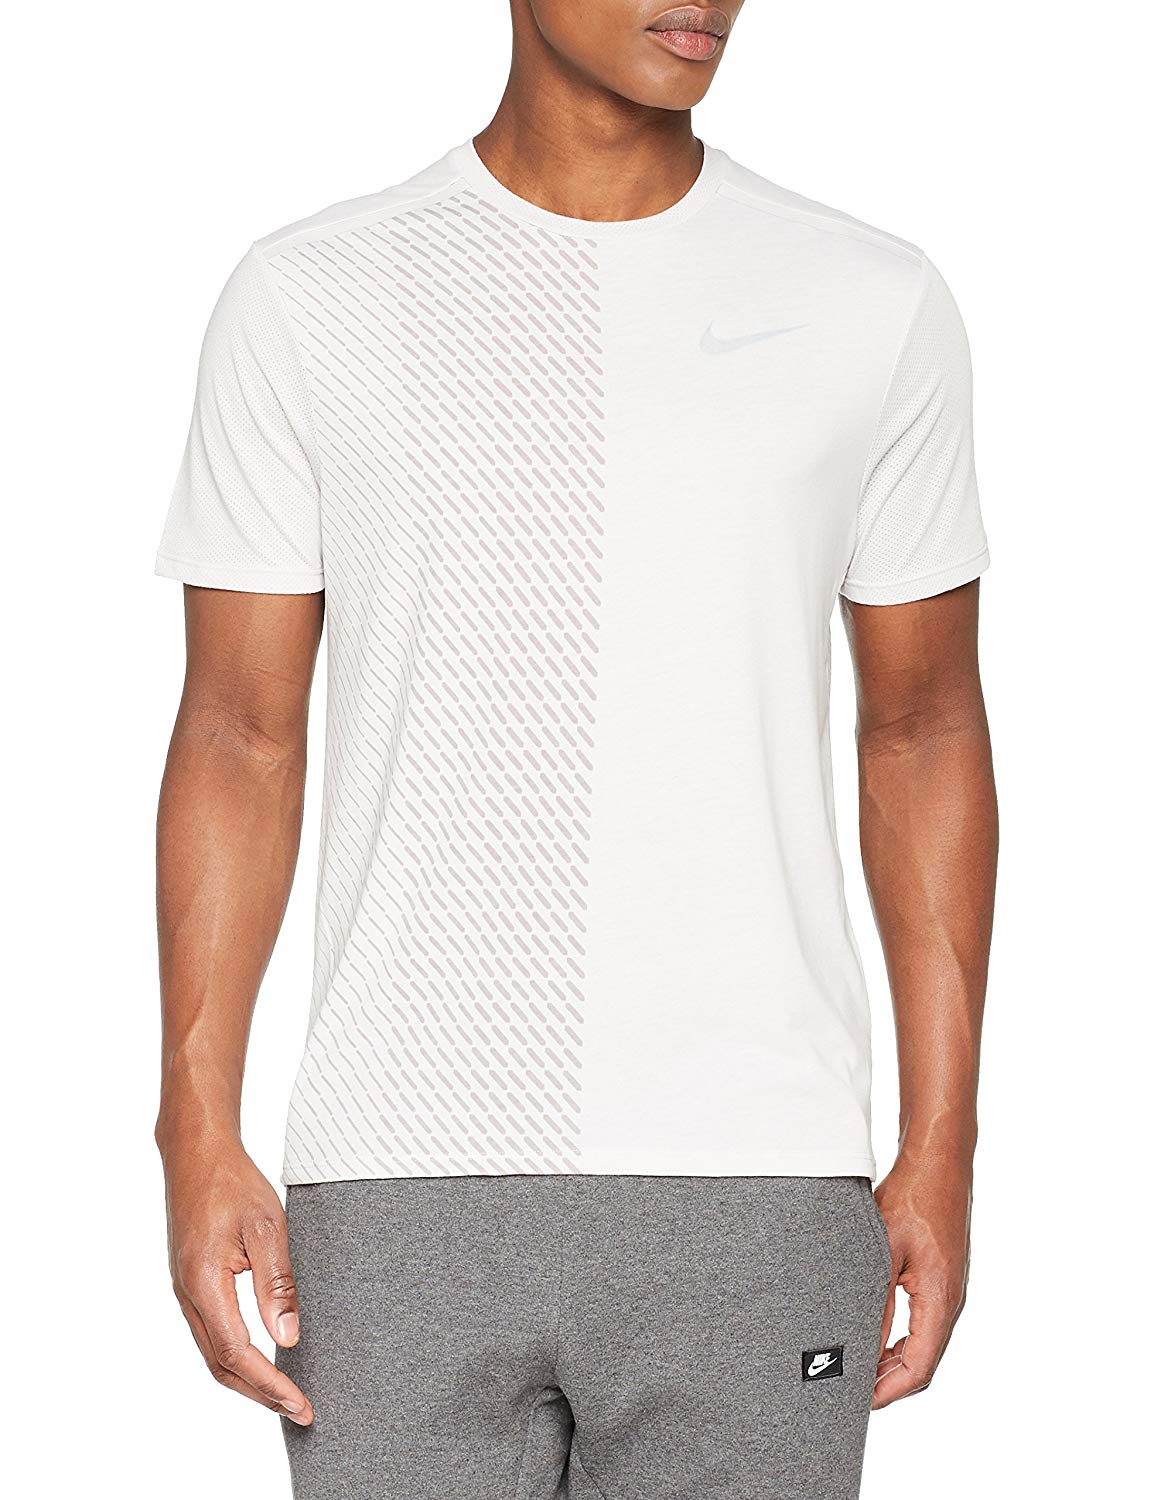 Camiseta Nike tallas S, XL y XXL